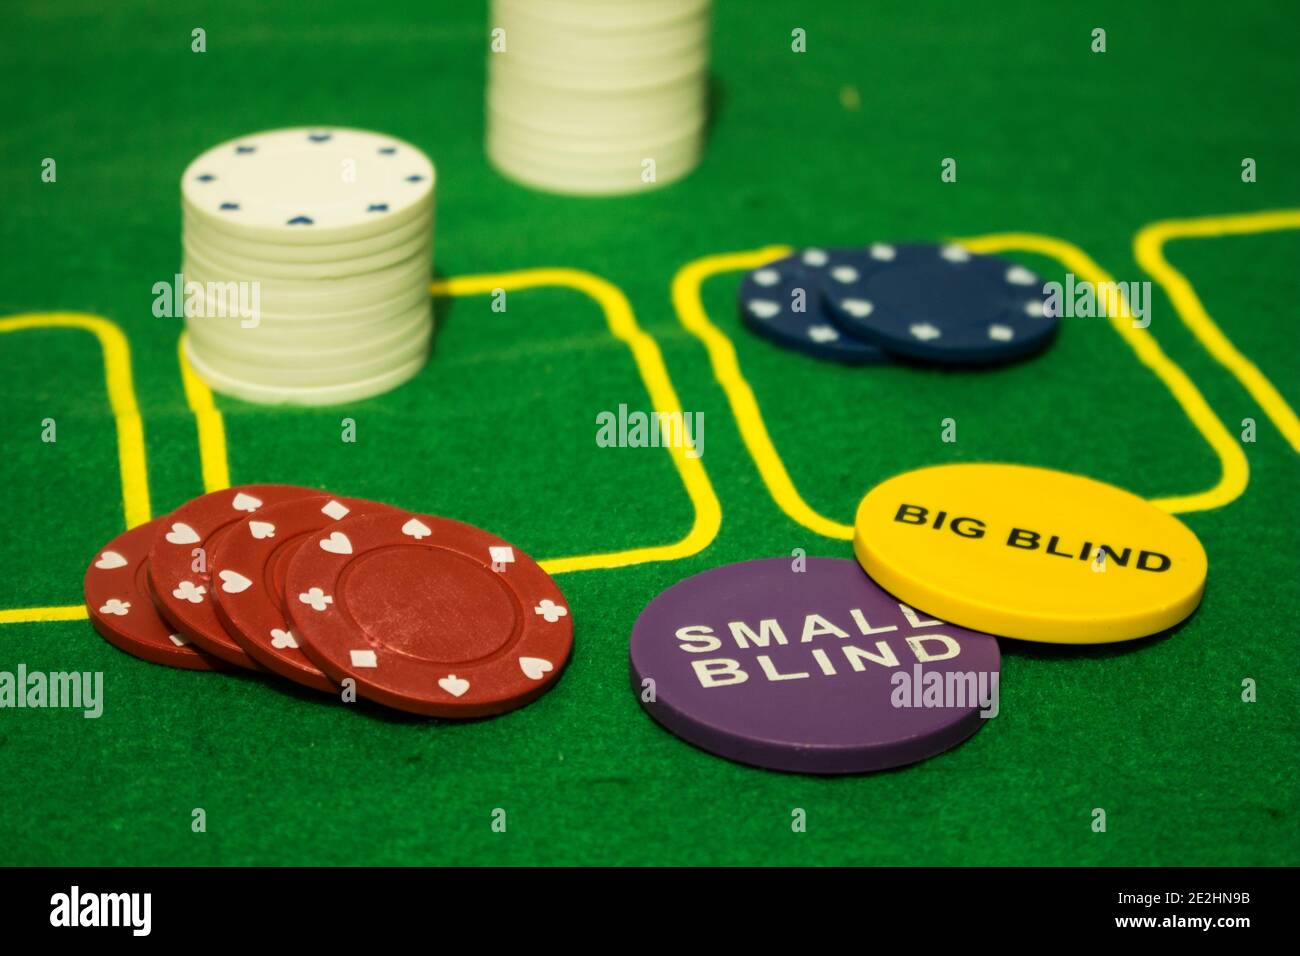 Divers jetons colorés pour les jeux de carding et de pari avec deux Les médailles ont été très utiles pour le Texas Hold'em sorte de poker Banque D'Images